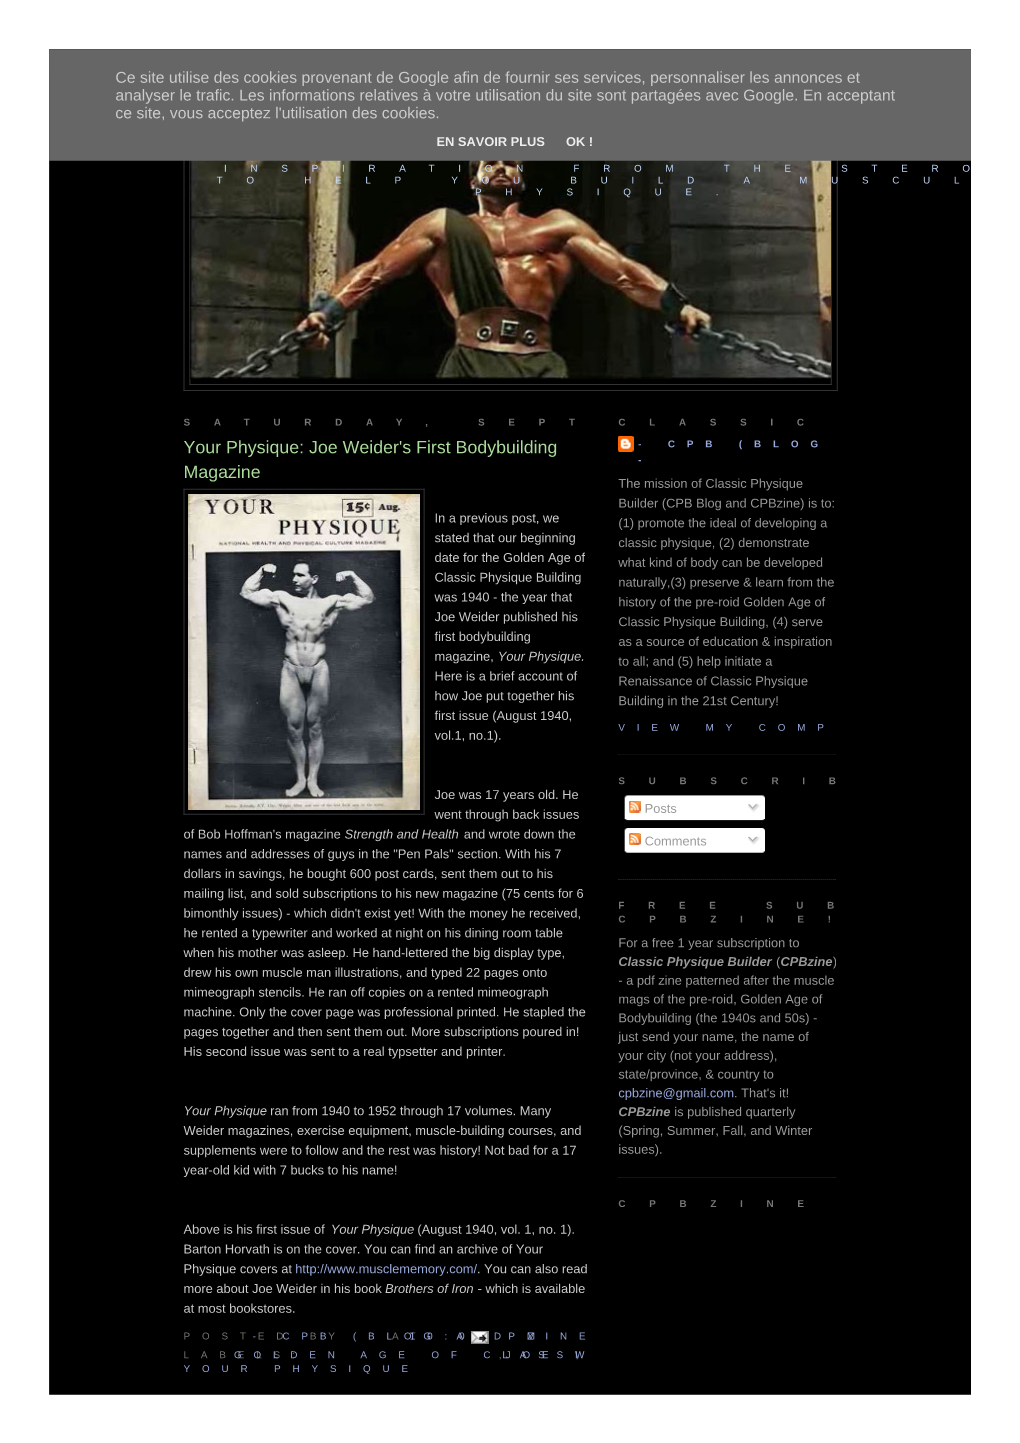 Joe Weider's First Bodybuilding Magazine